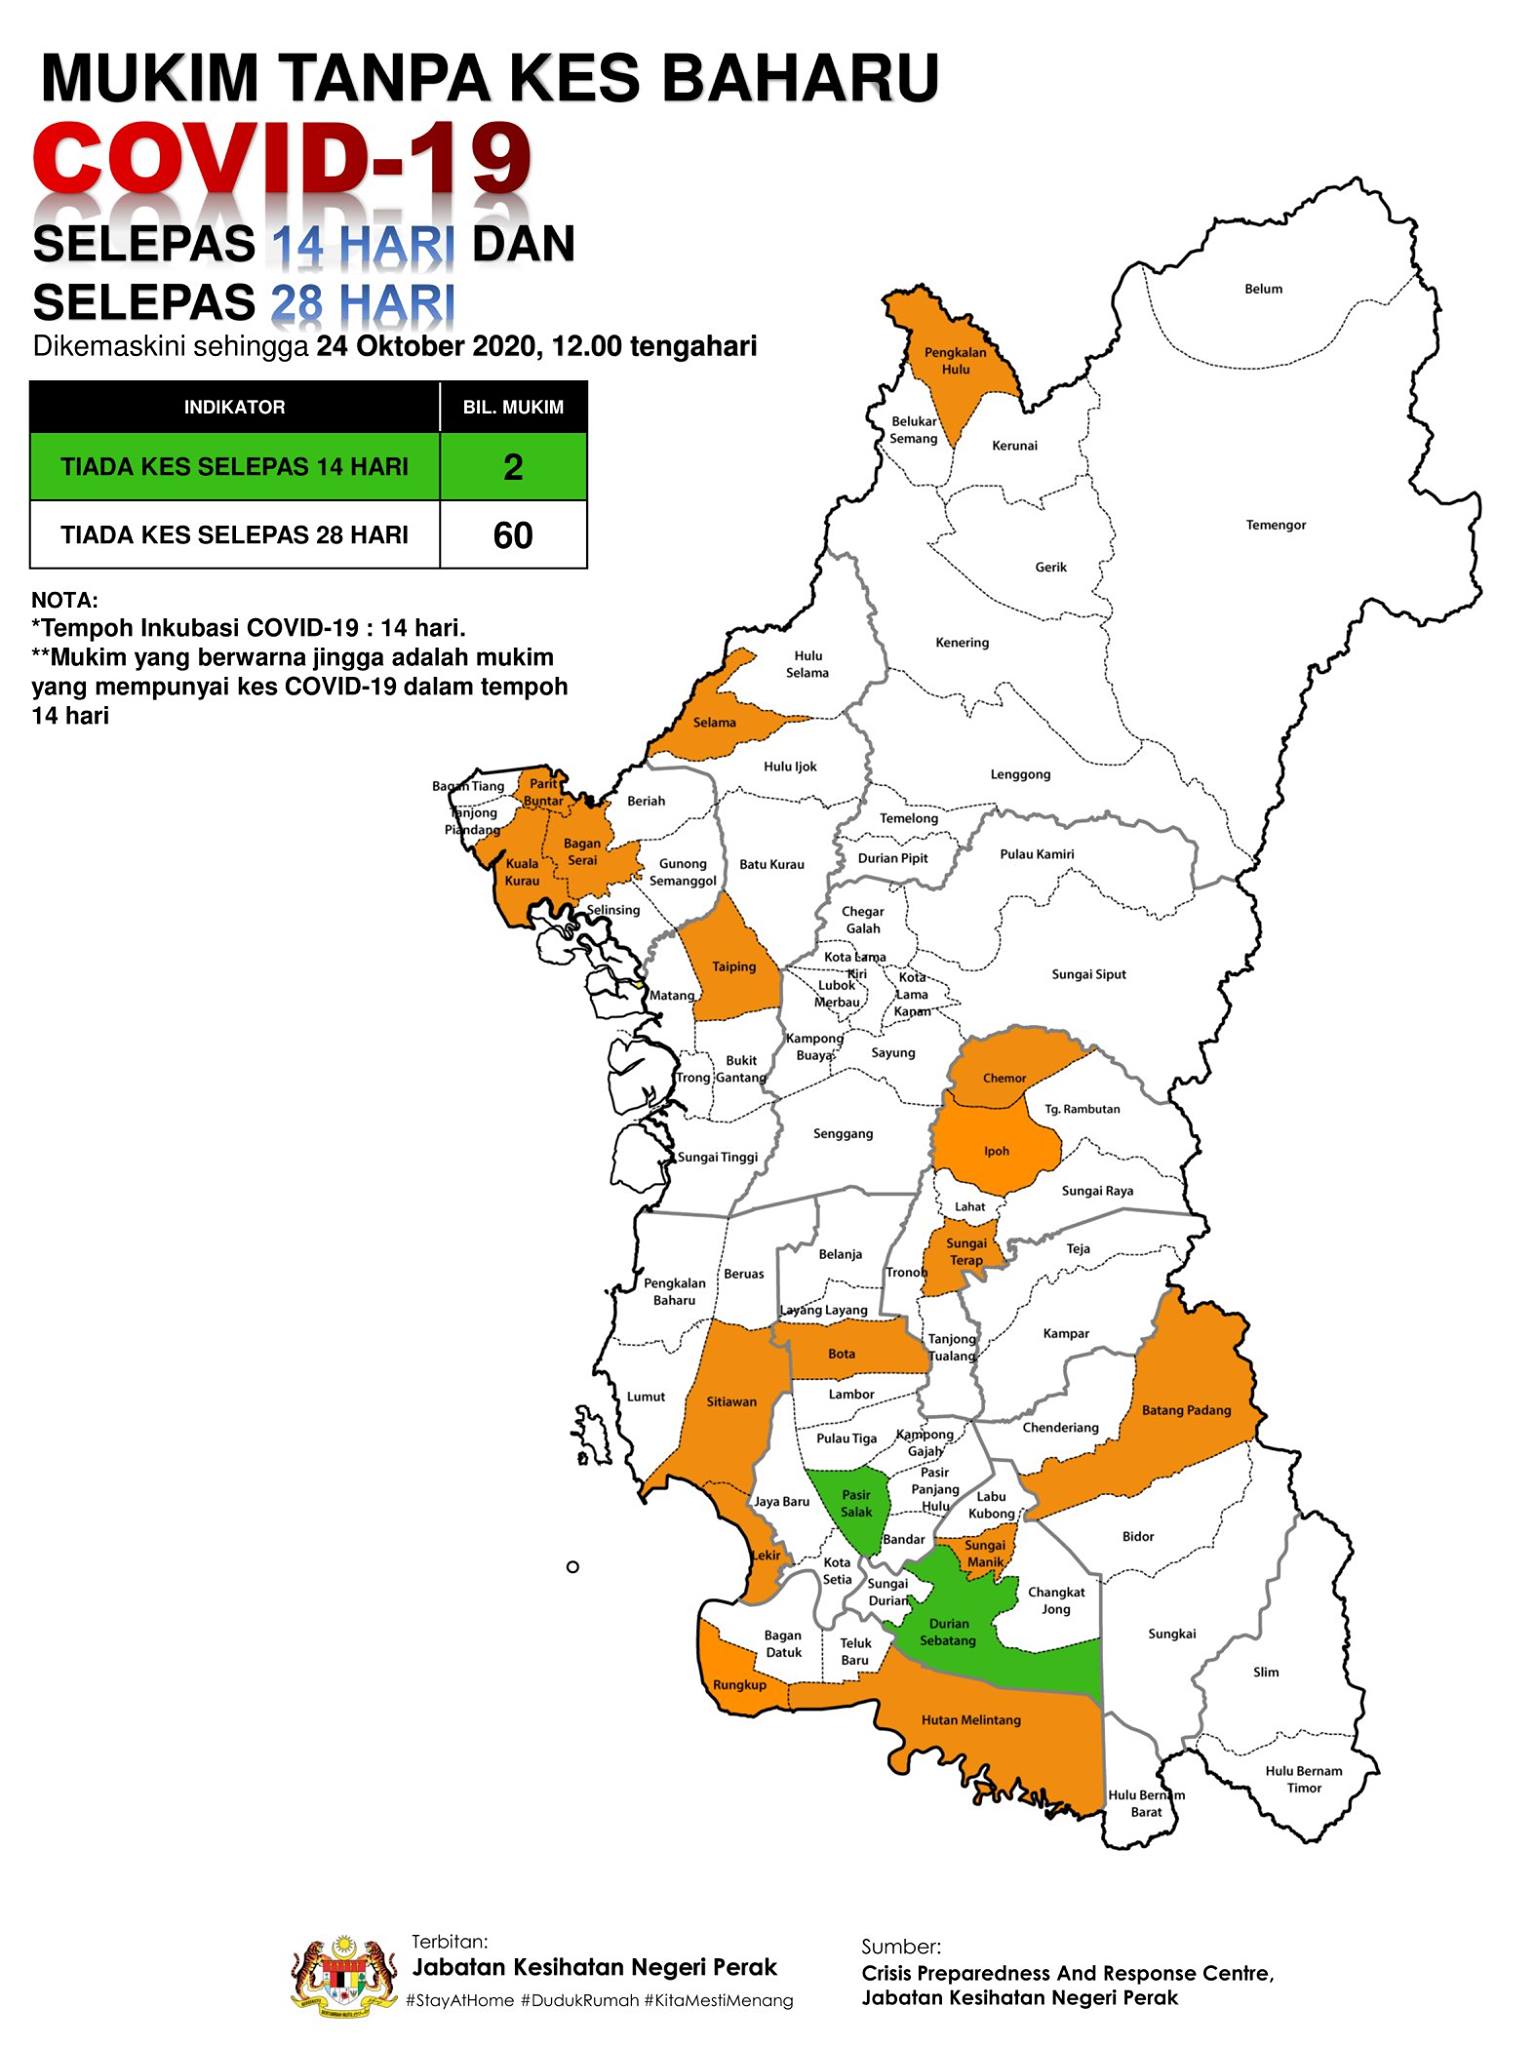 霹雳州的橙区增加了龙谷区一个，总数为16个。